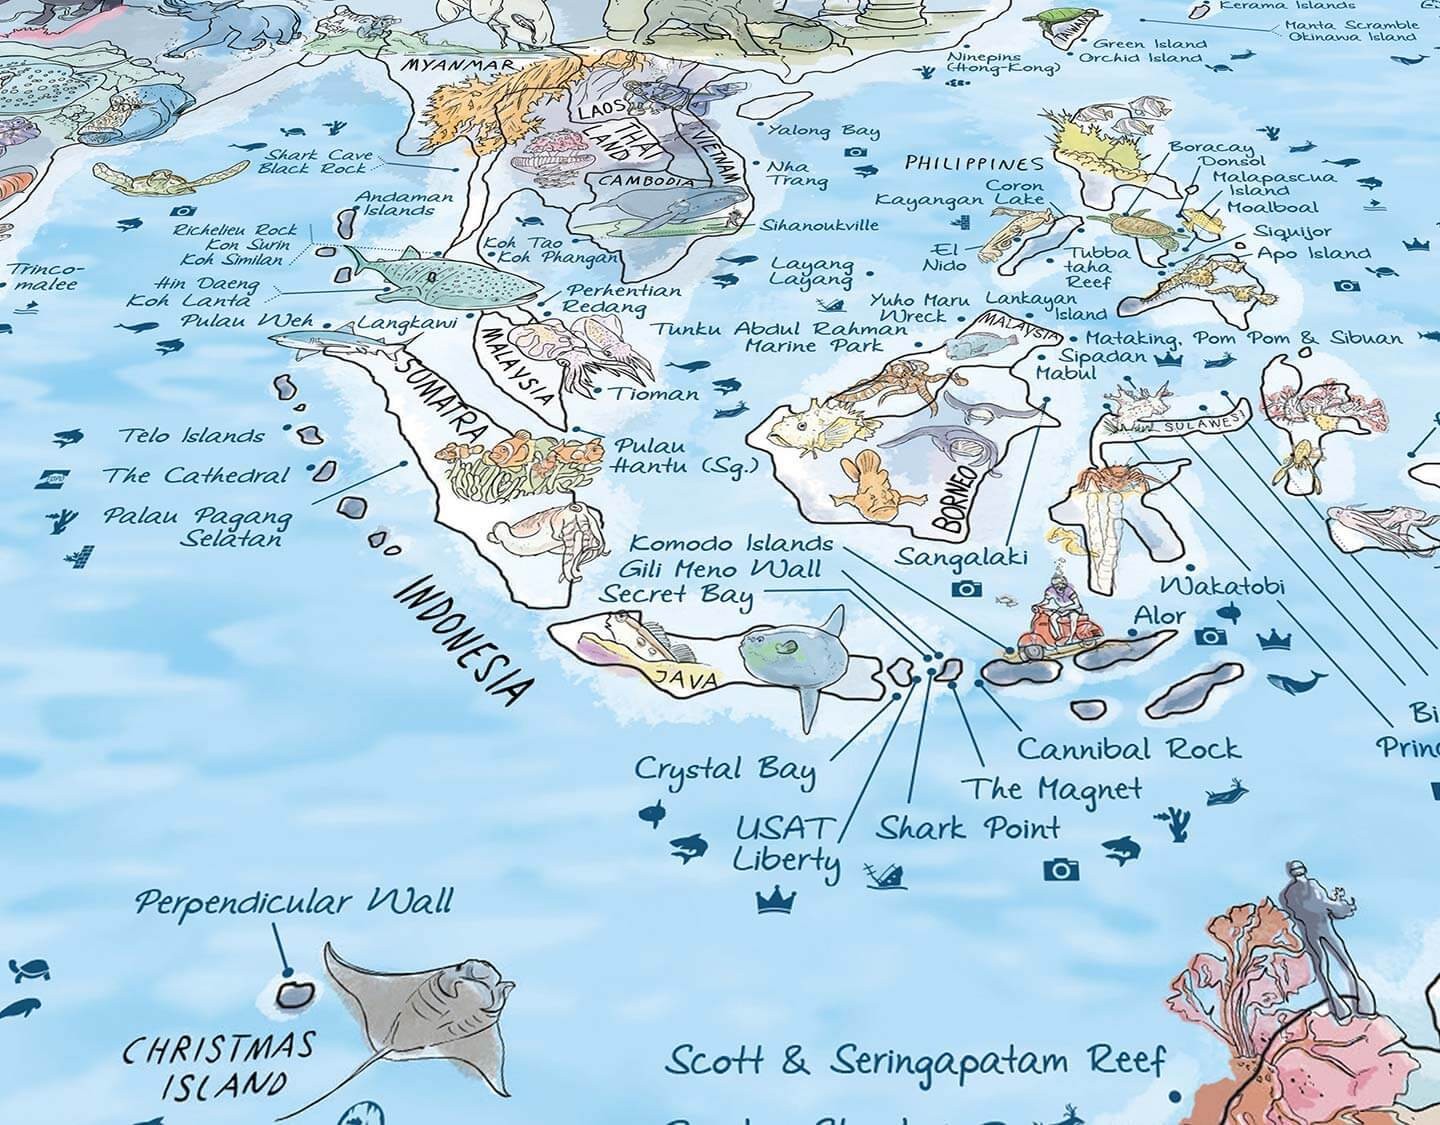 Mapas impresionantes - Póster del mapa mundial - Mapa de buceo reescribible